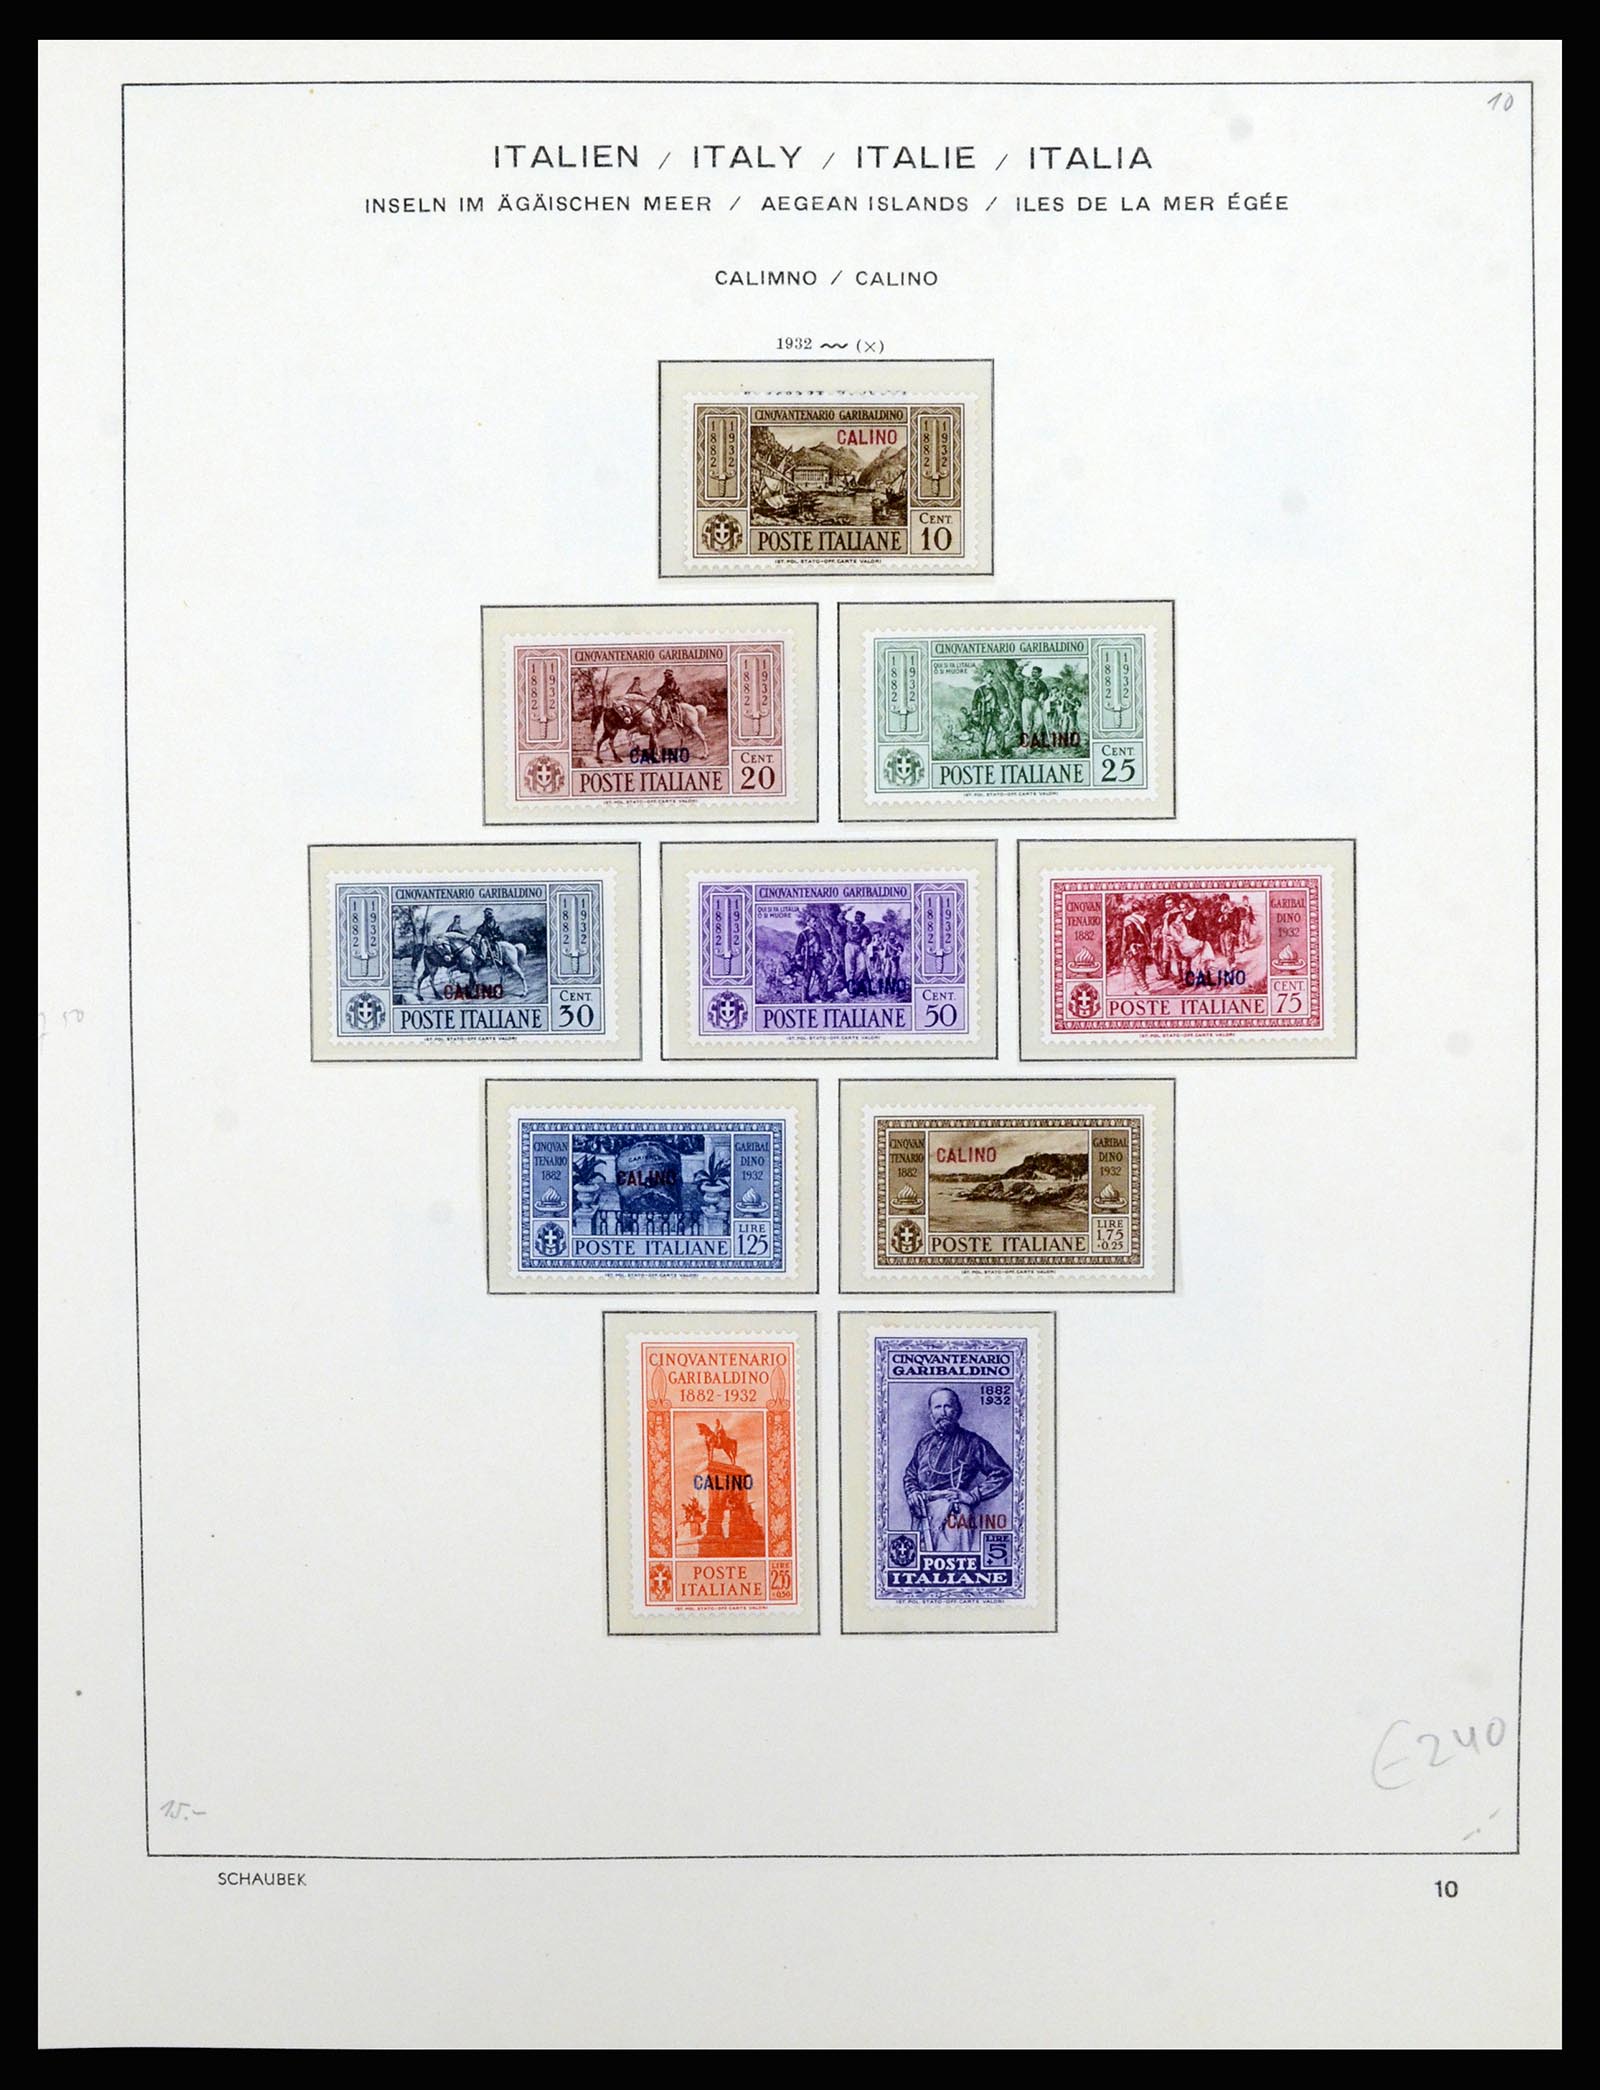 36577 036 - Stamp collection 36577 Italiaanse gebieden 1870-1940.